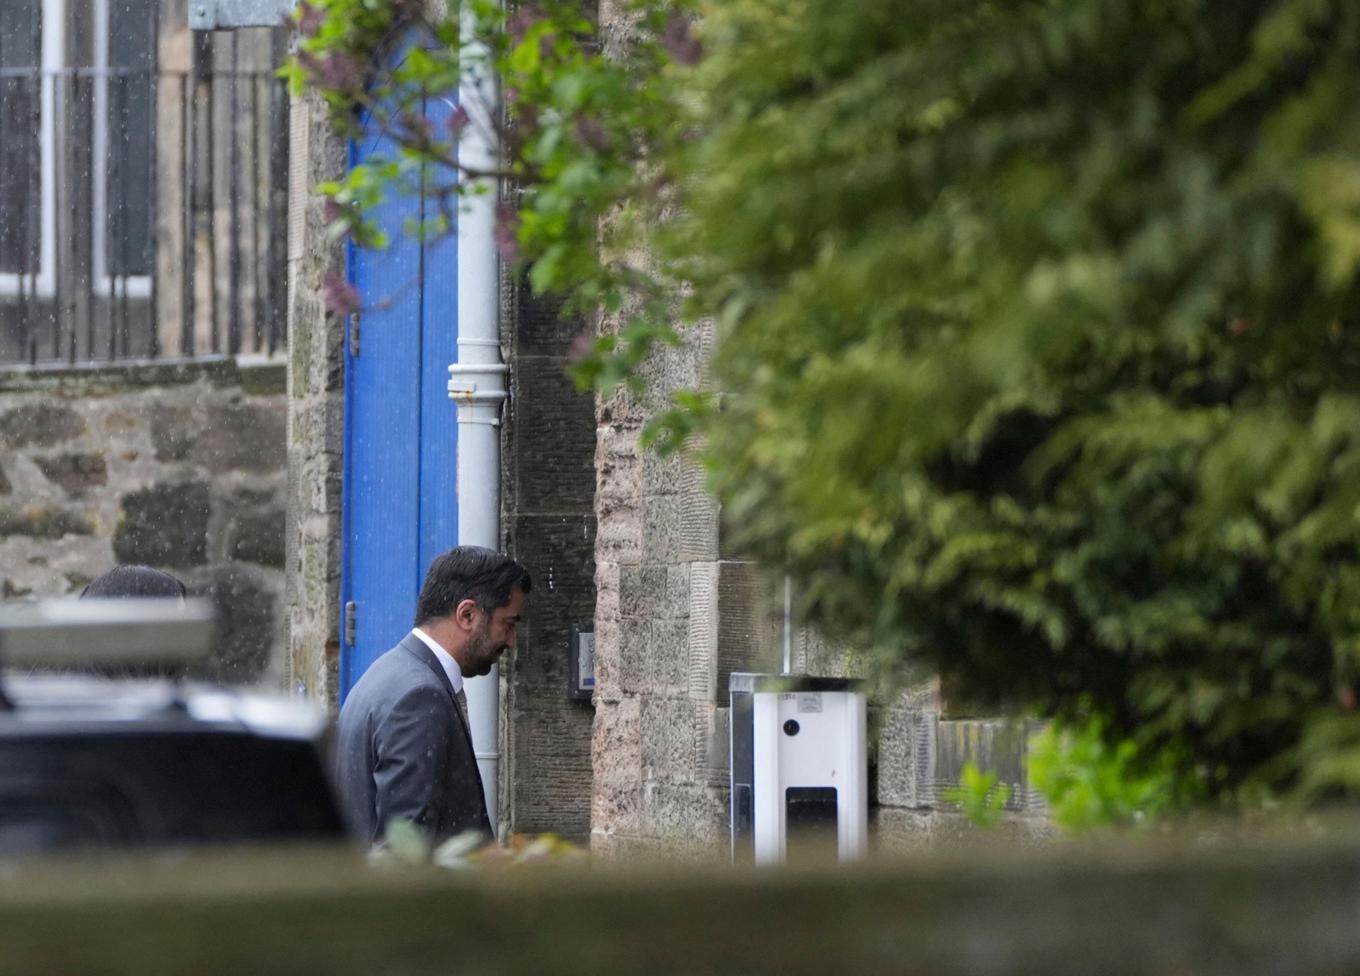 Humza Yousaf på väg in i Bute House, försteministerns residens i Edinburgh, där han meddelade sin avgång på måndagen. Foto: Andrew Milligan/PA via AP/TT